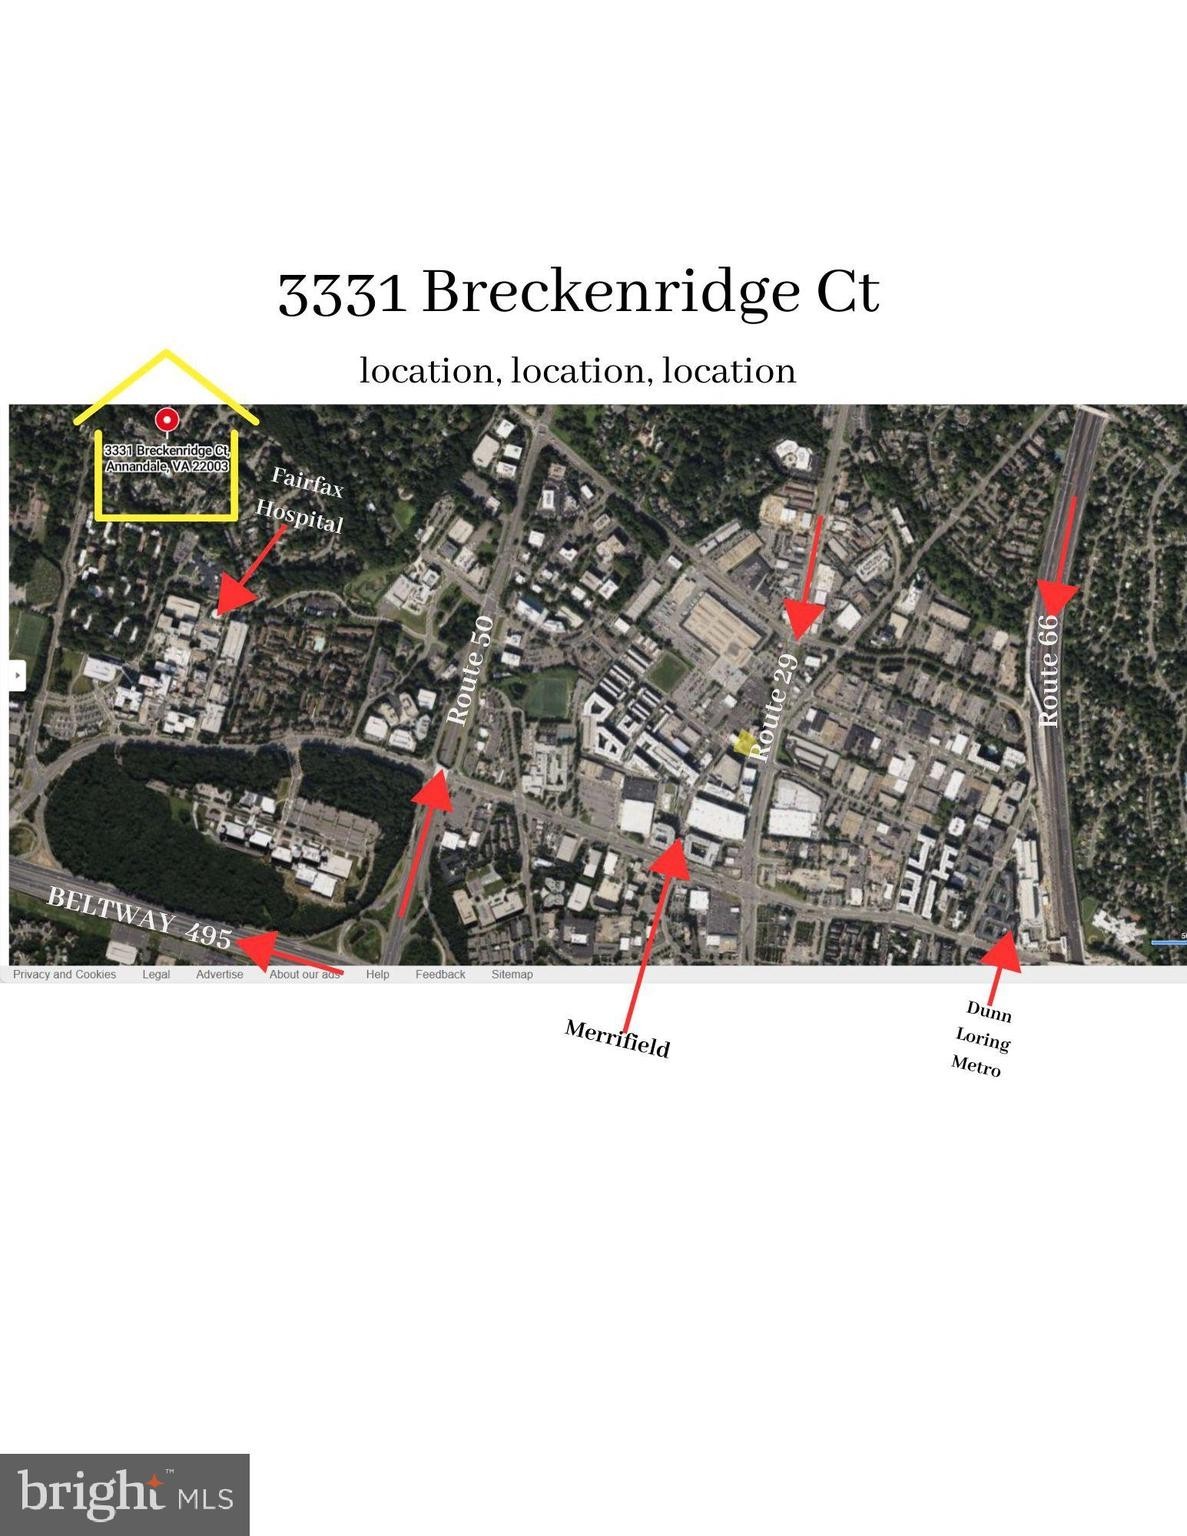 49. 3331 Breckenridge Court